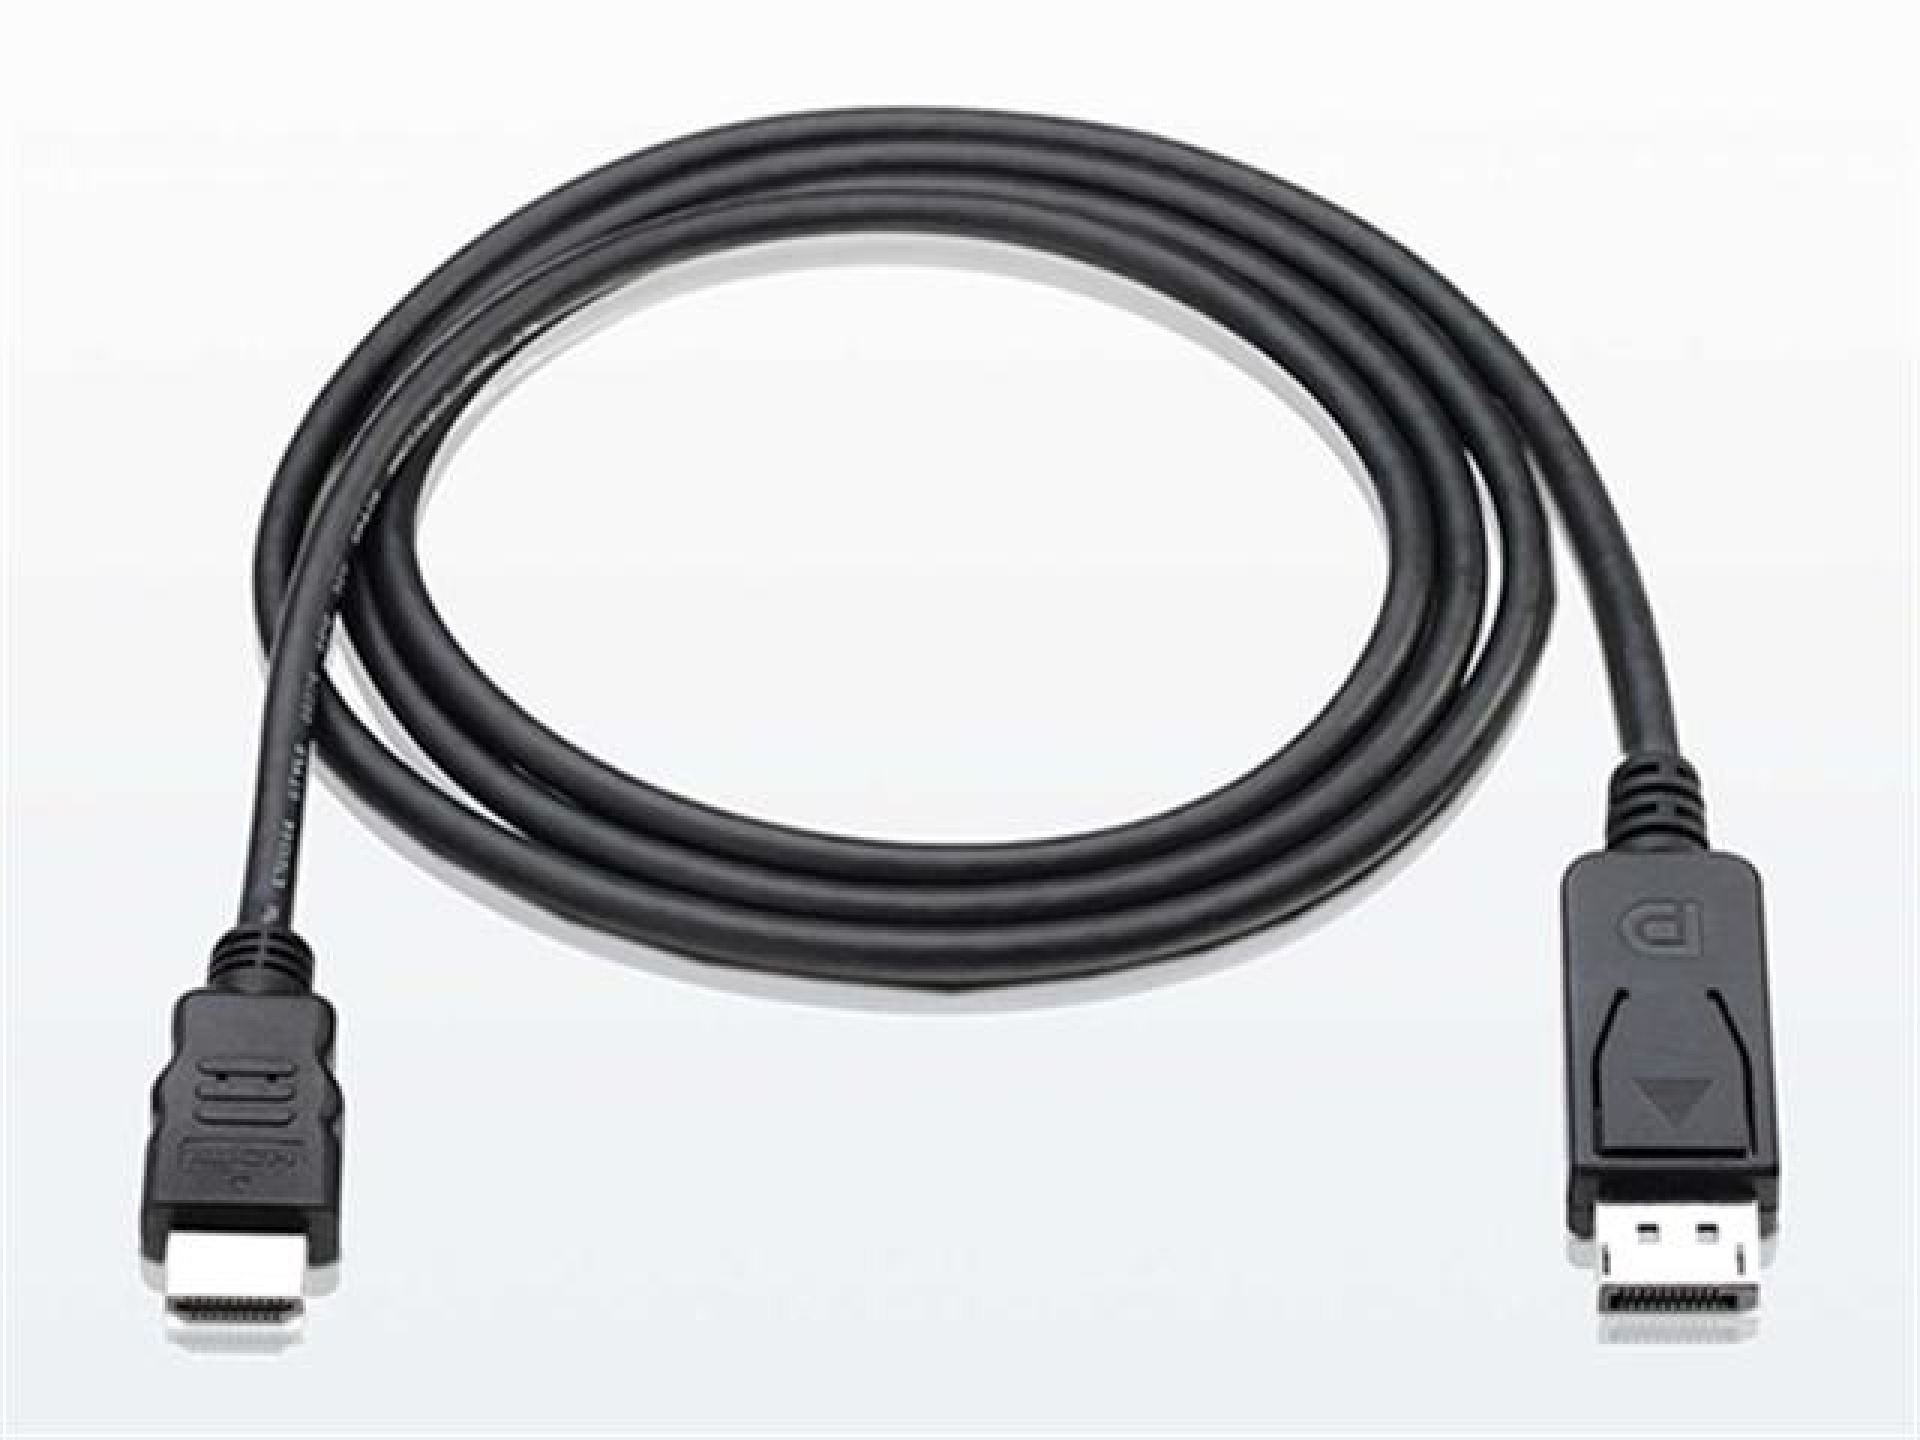 Konverterkabel DisplayPort 1.1 auf HDMI, schwarz, 1 m